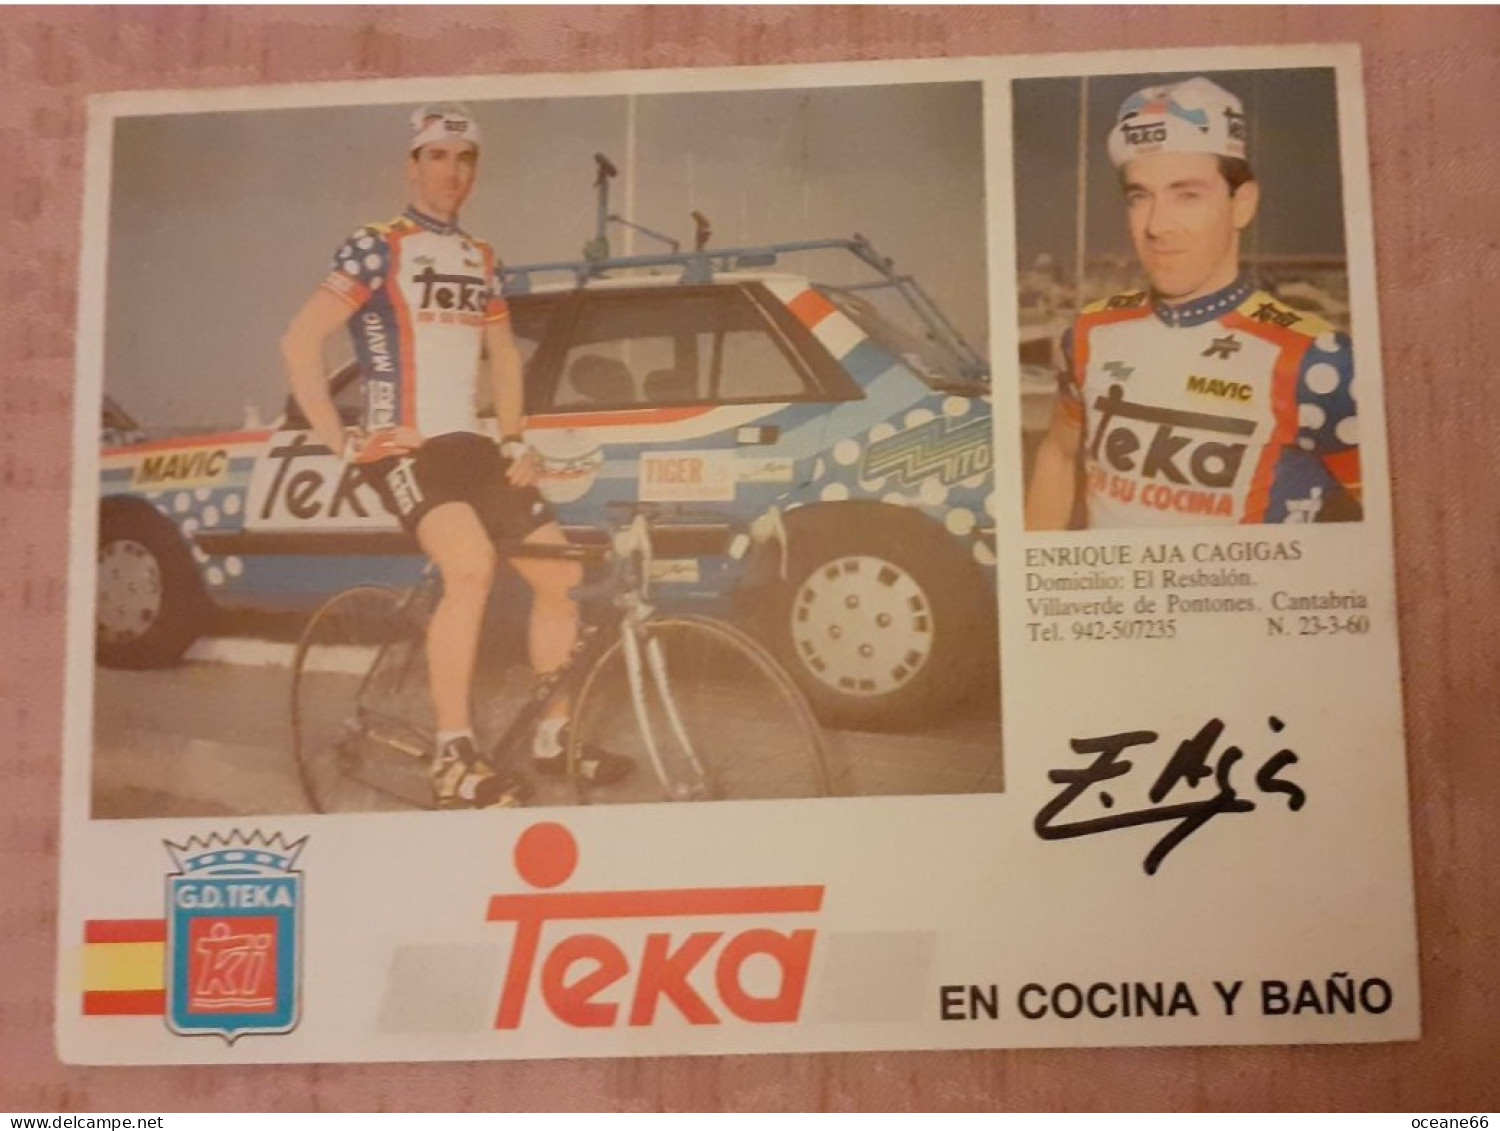 Autographe Enrique Aja Cagigas Teka Format 12 X 16 Cm - Cycling